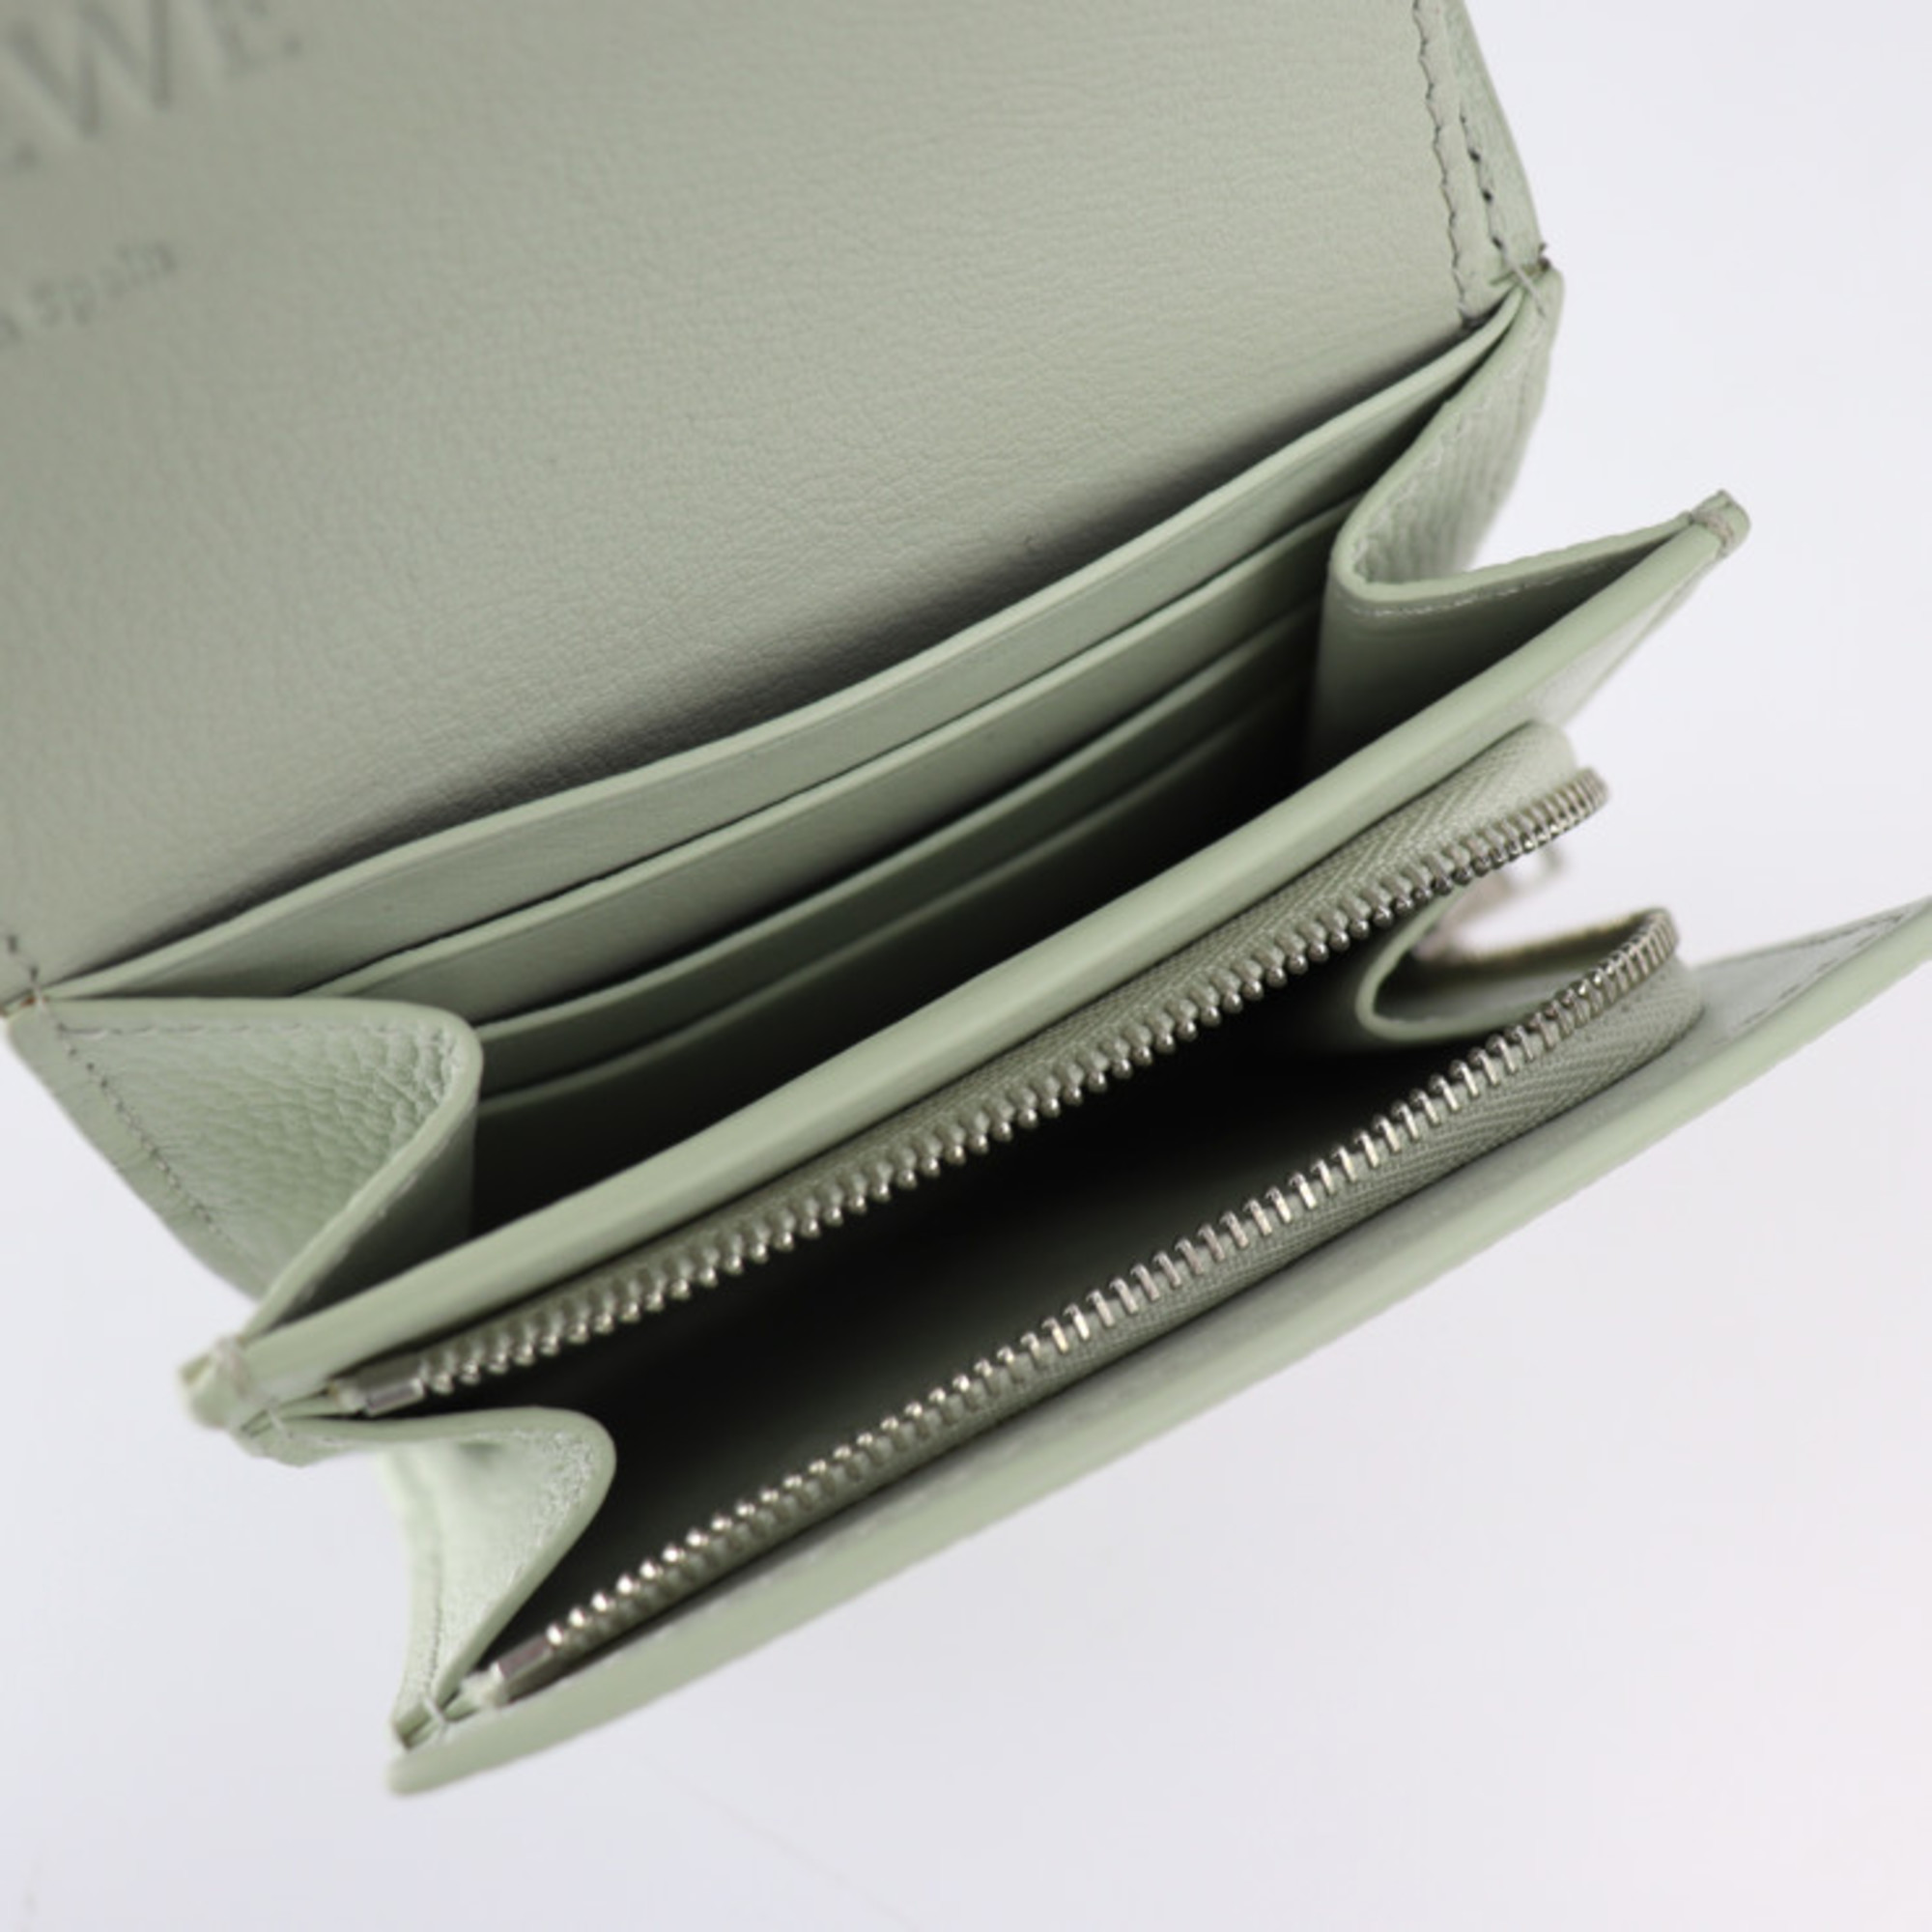 LOEWE Loewe ANAGRAM COMPACT FLAP WALLET Anagram compact flap wallet folio C821L57X01 leather light green series silver metal fittings L-shaped fastener